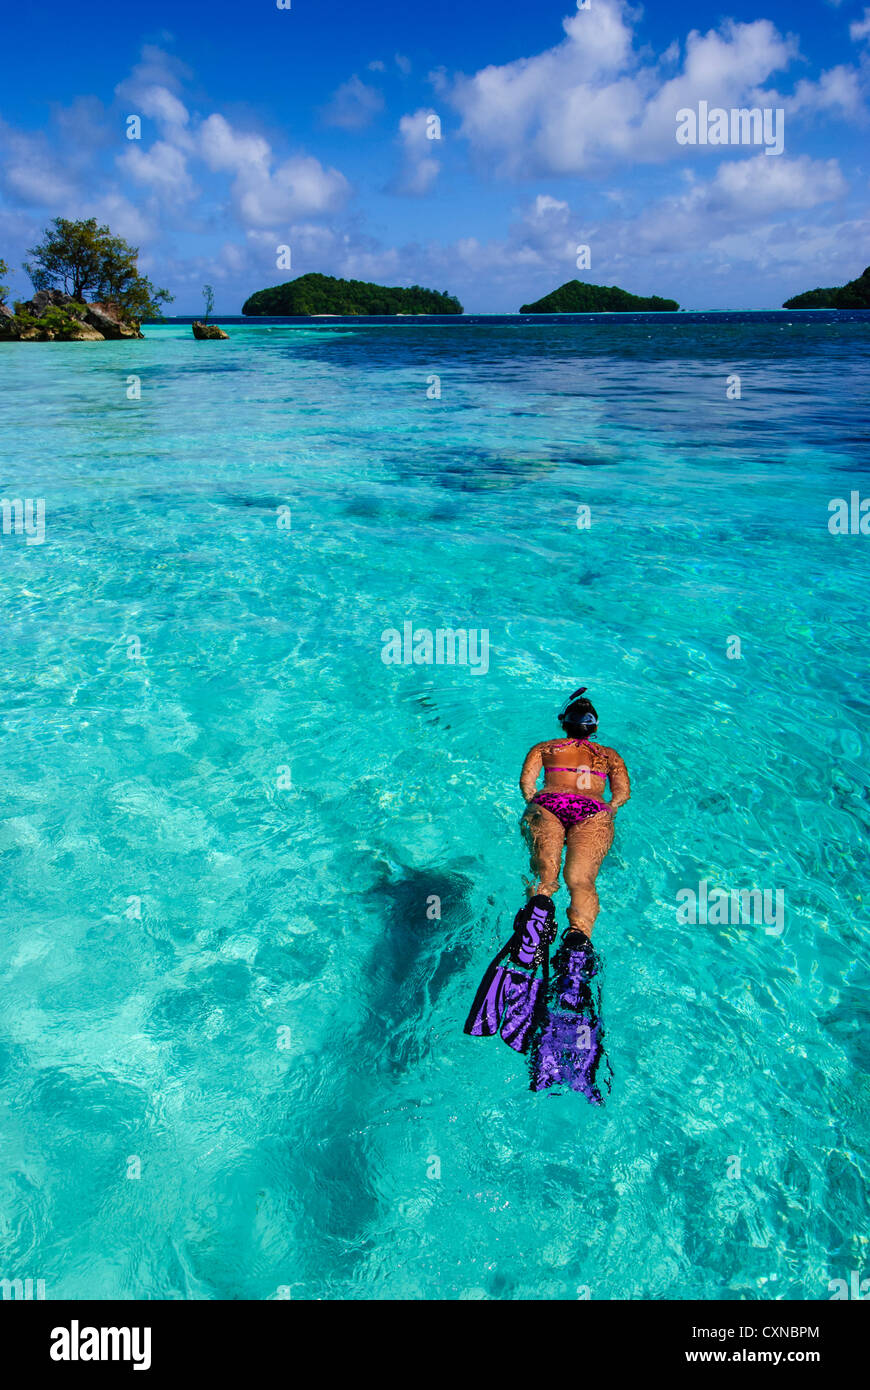 Schnorchler auf das blaue Wasser des Ngermeaus-Insel, Palau Mikronesien Stockfoto